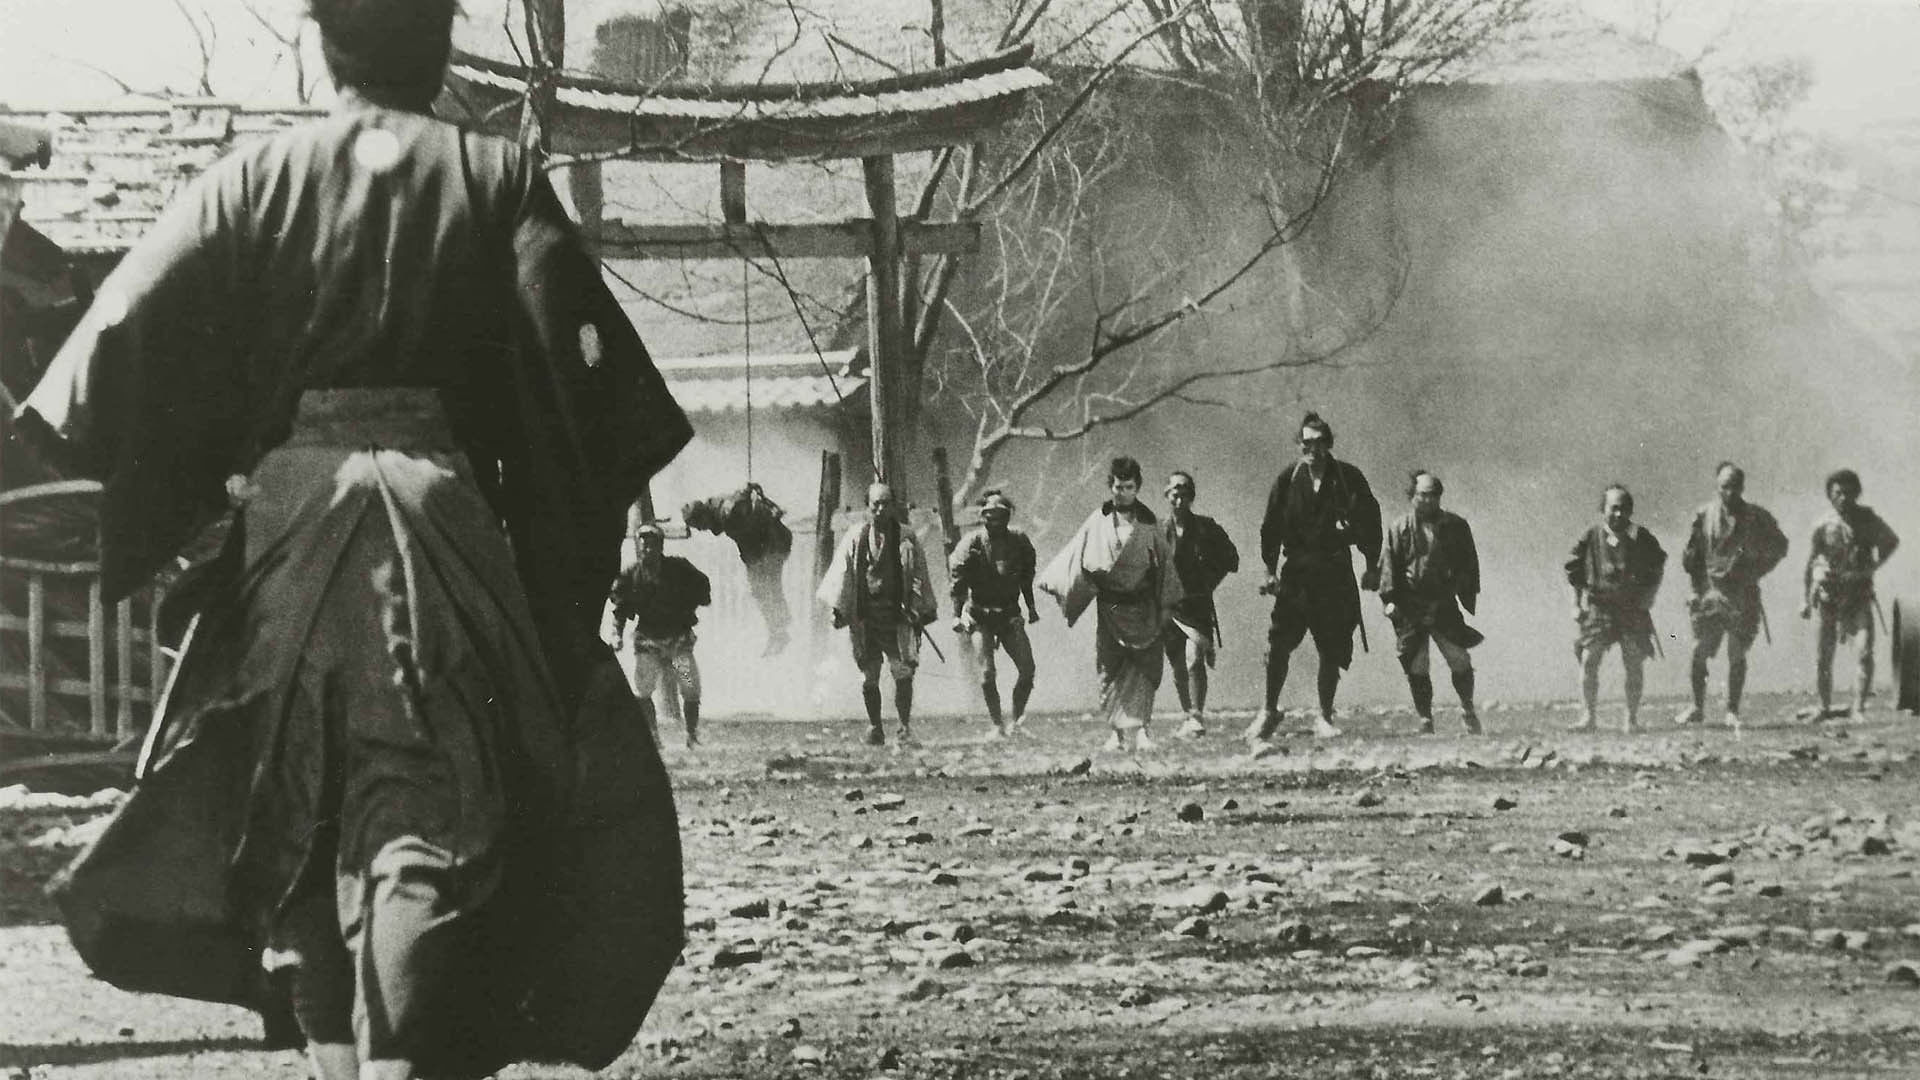 دانلود فیلم Yojimbo 1961